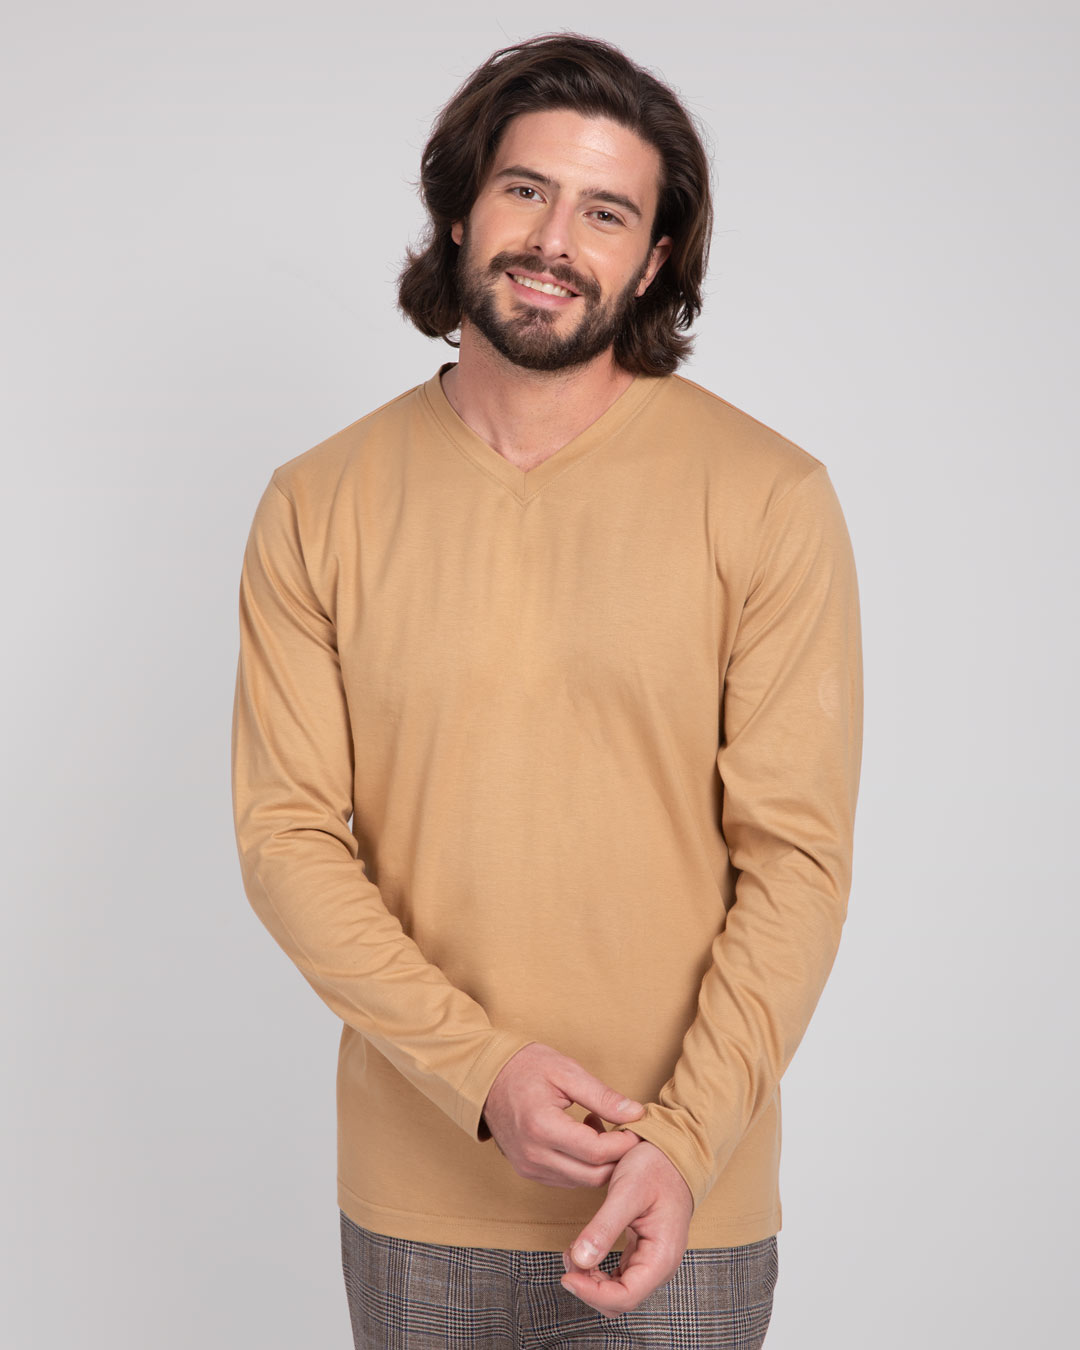 Buy Dusky Beige Plain V-Neck Full Sleeves T-Shirt For Men Online India ...